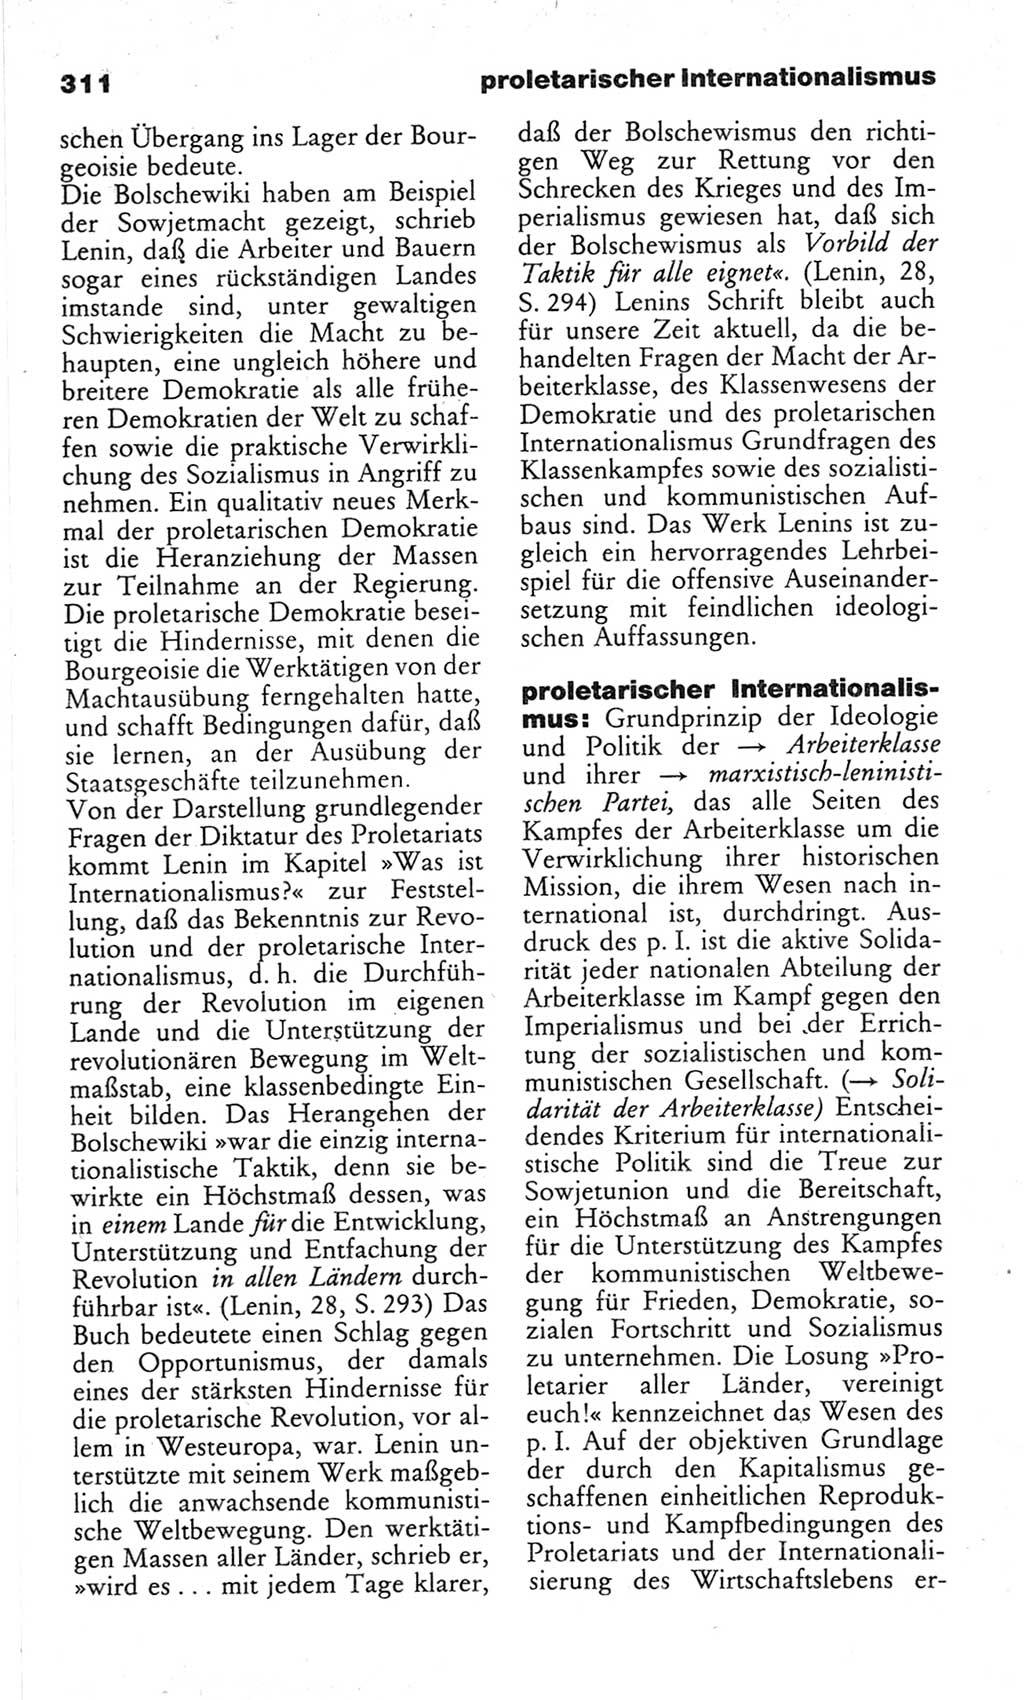 Wörterbuch des wissenschaftlichen Kommunismus [Deutsche Demokratische Republik (DDR)] 1982, Seite 311 (Wb. wiss. Komm. DDR 1982, S. 311)